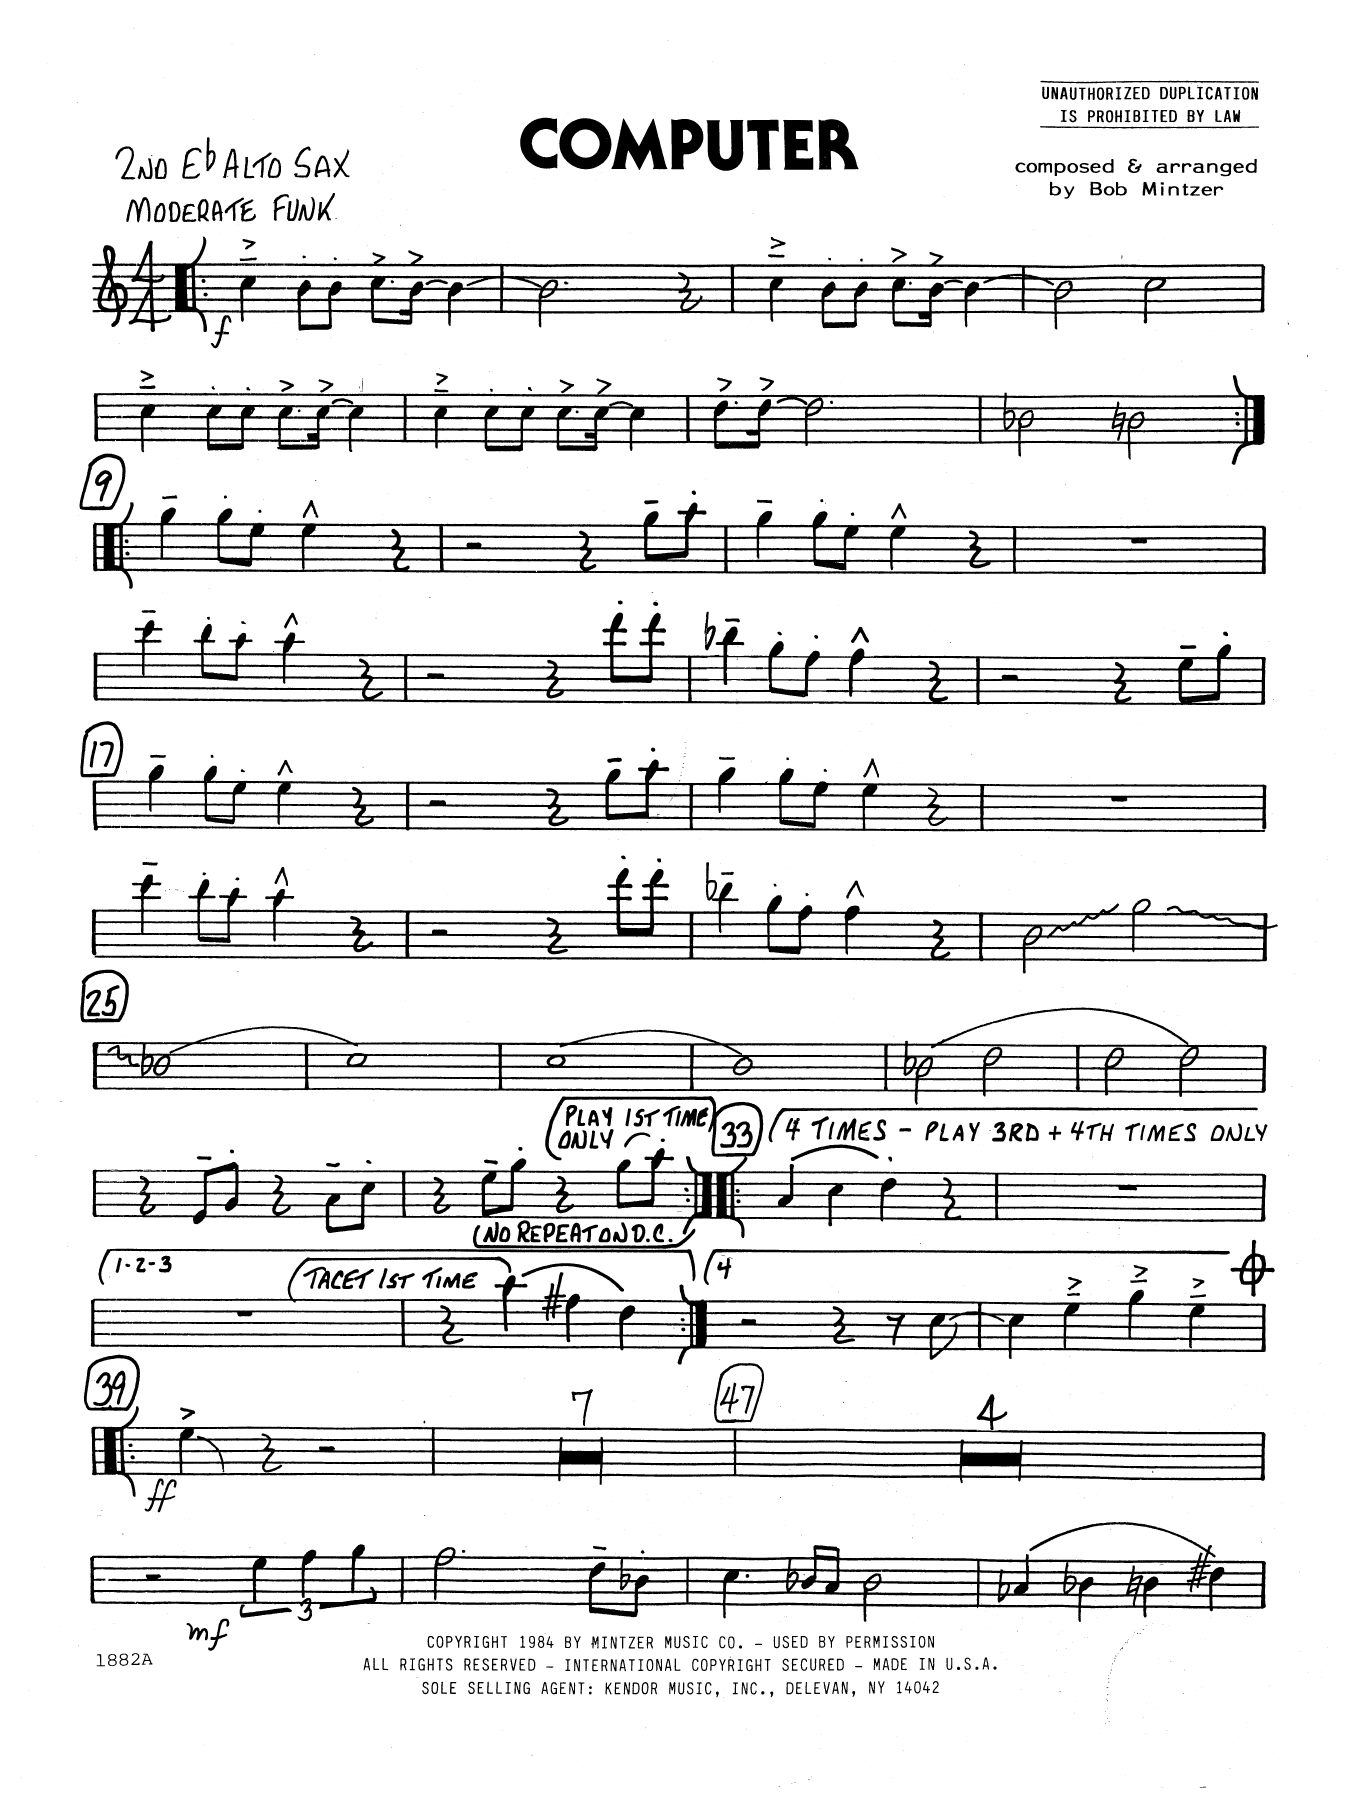 Download Bob Mintzer Computer - 2nd Eb Alto Saxophone Sheet Music